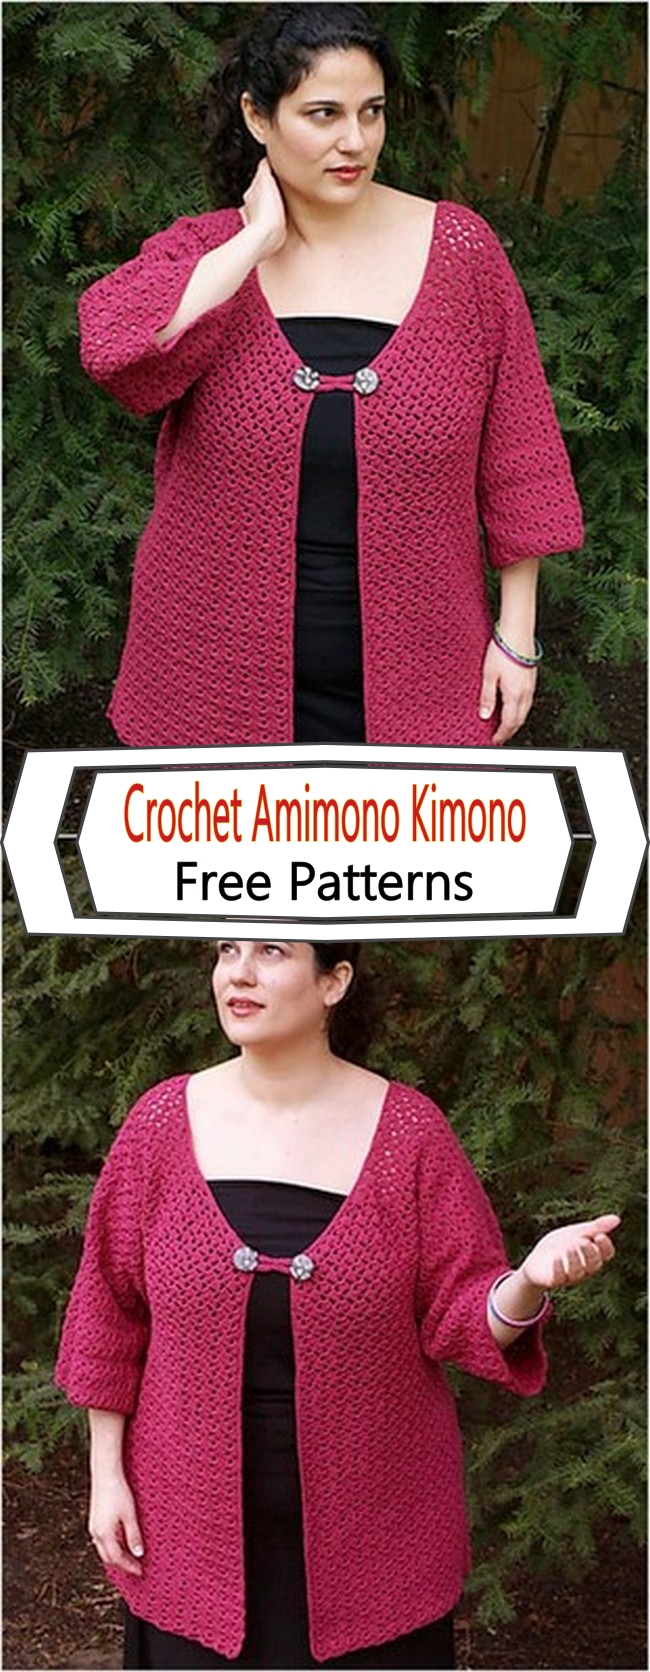 Crochet Amimono Kimono Free Patterns